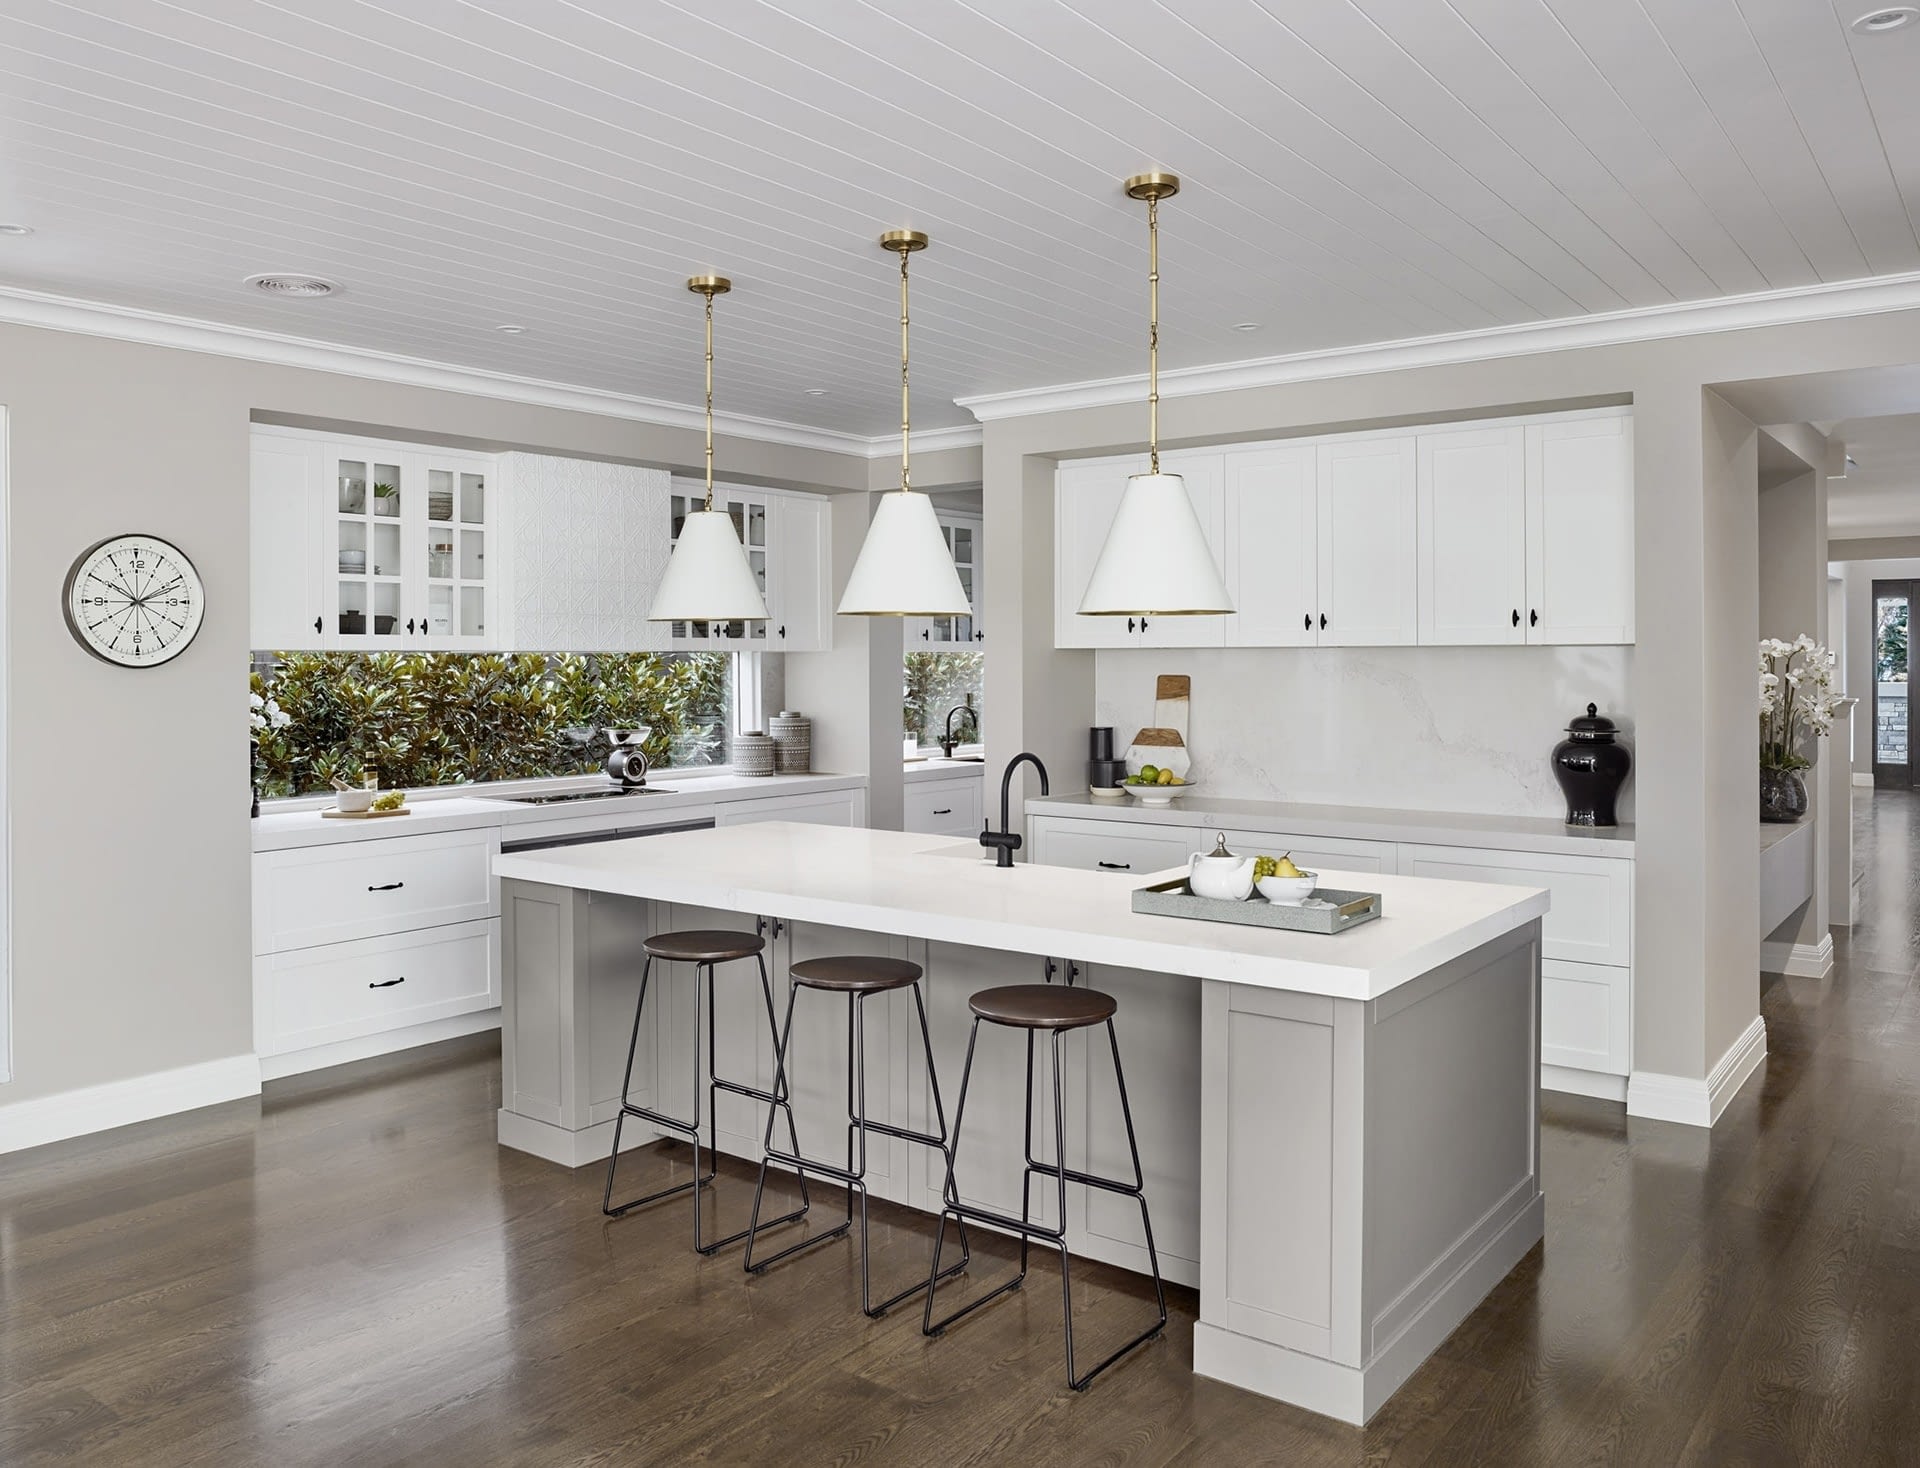 Hamptons Kitchen Design Ideas: Top 10 for 2021 - TLC Interiors